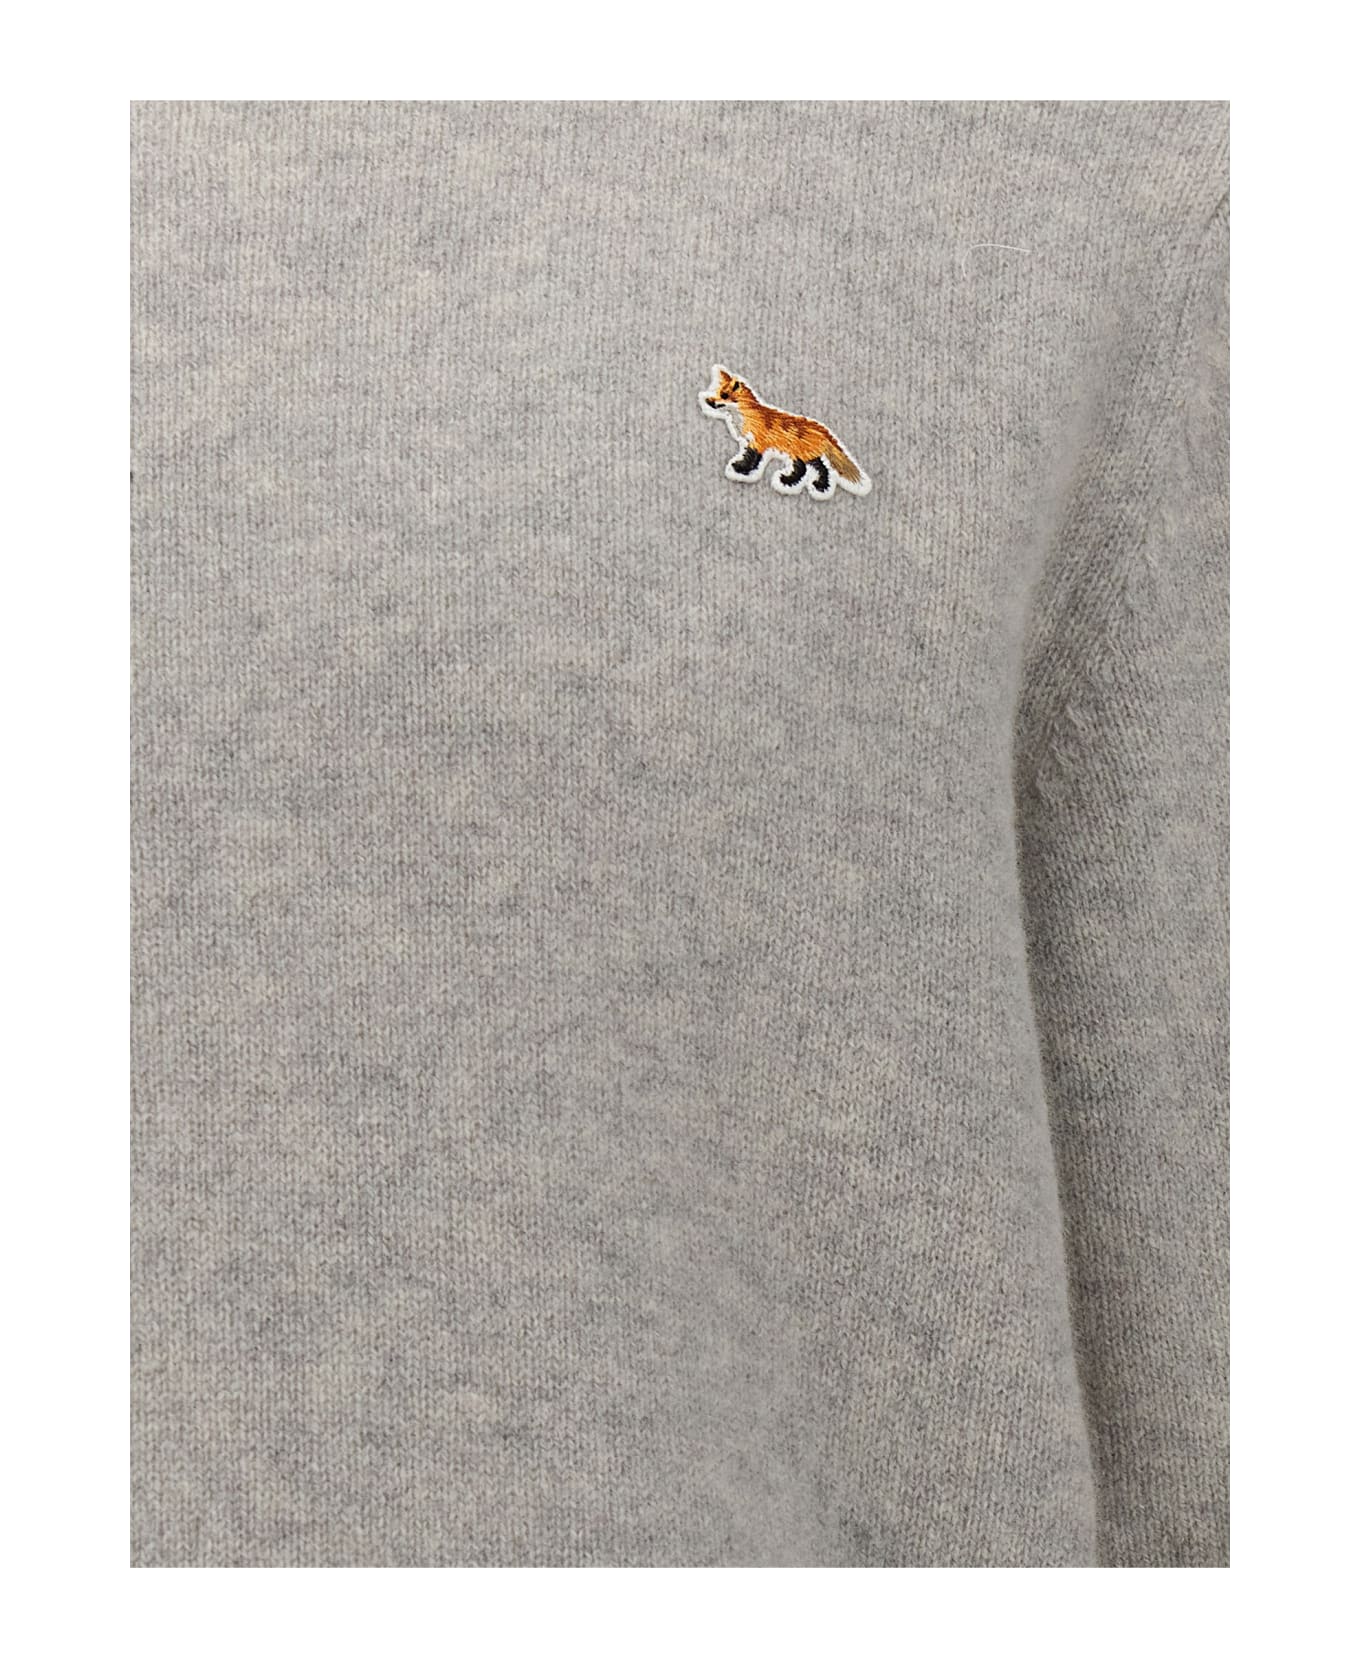 Maison Kitsuné 'baby Fox' Sweater - Light Grey Melange ニットウェア